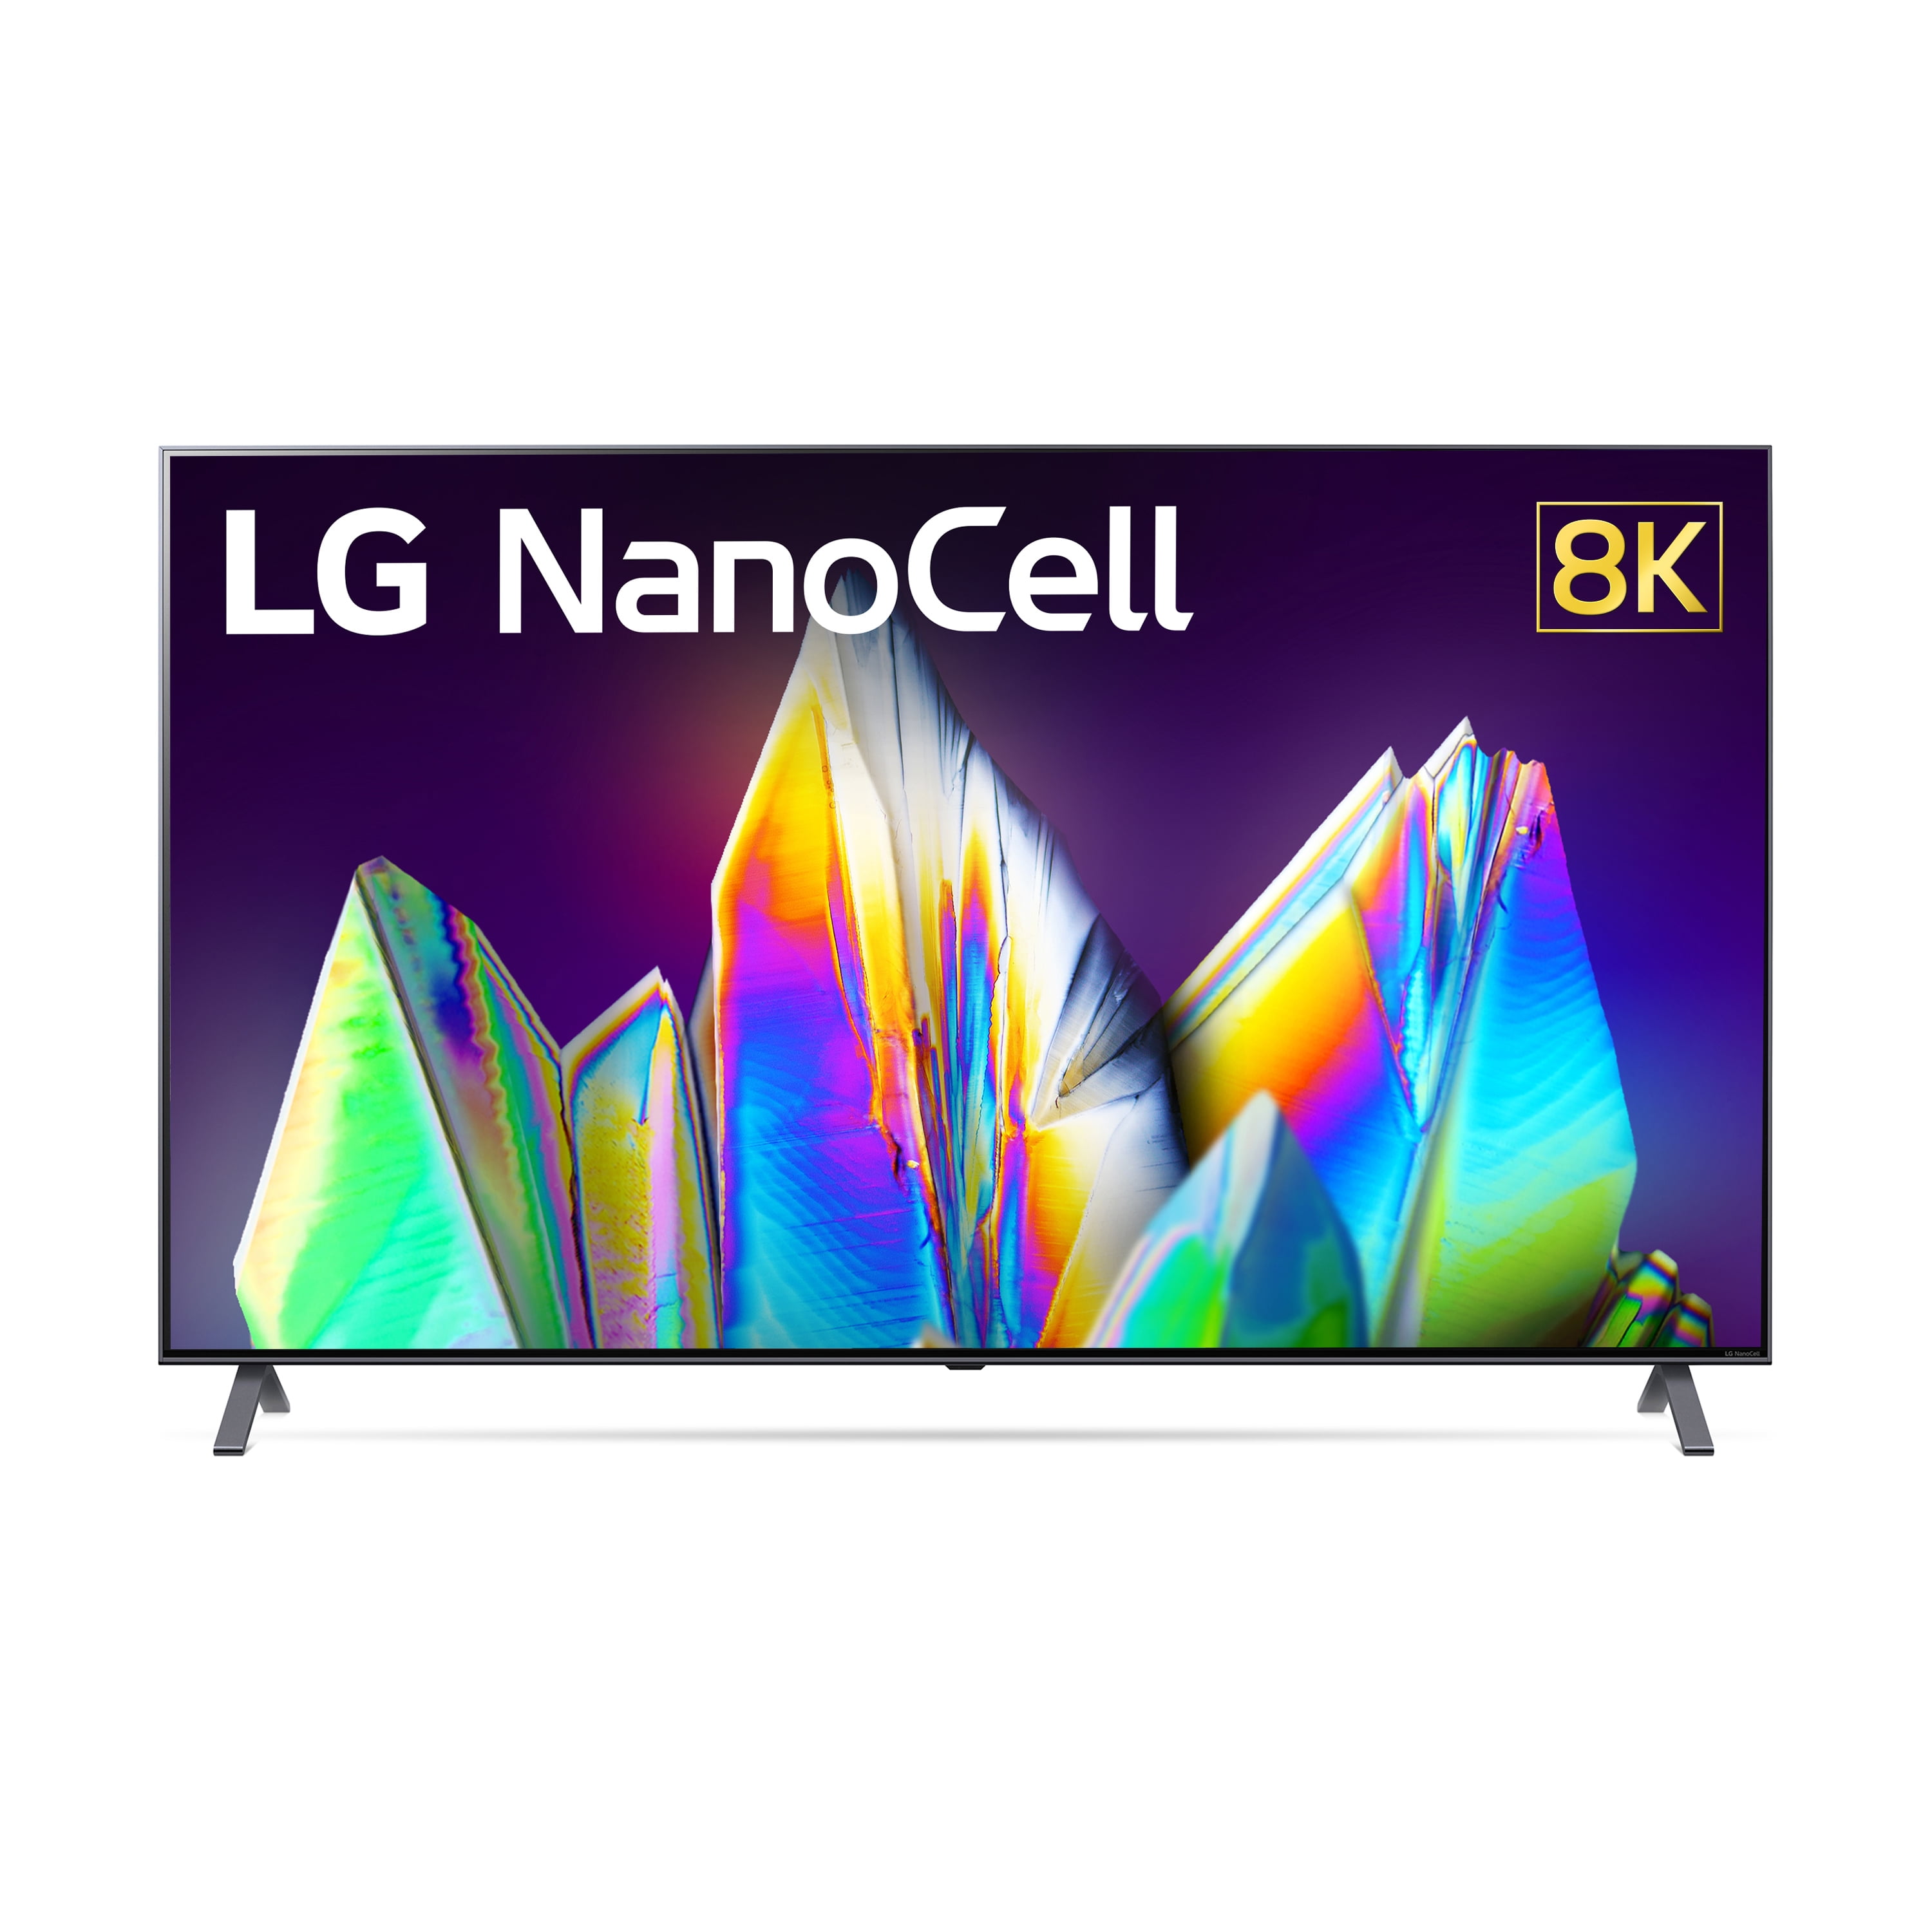 LG NanoCell NANO96 65 8K Smart TV